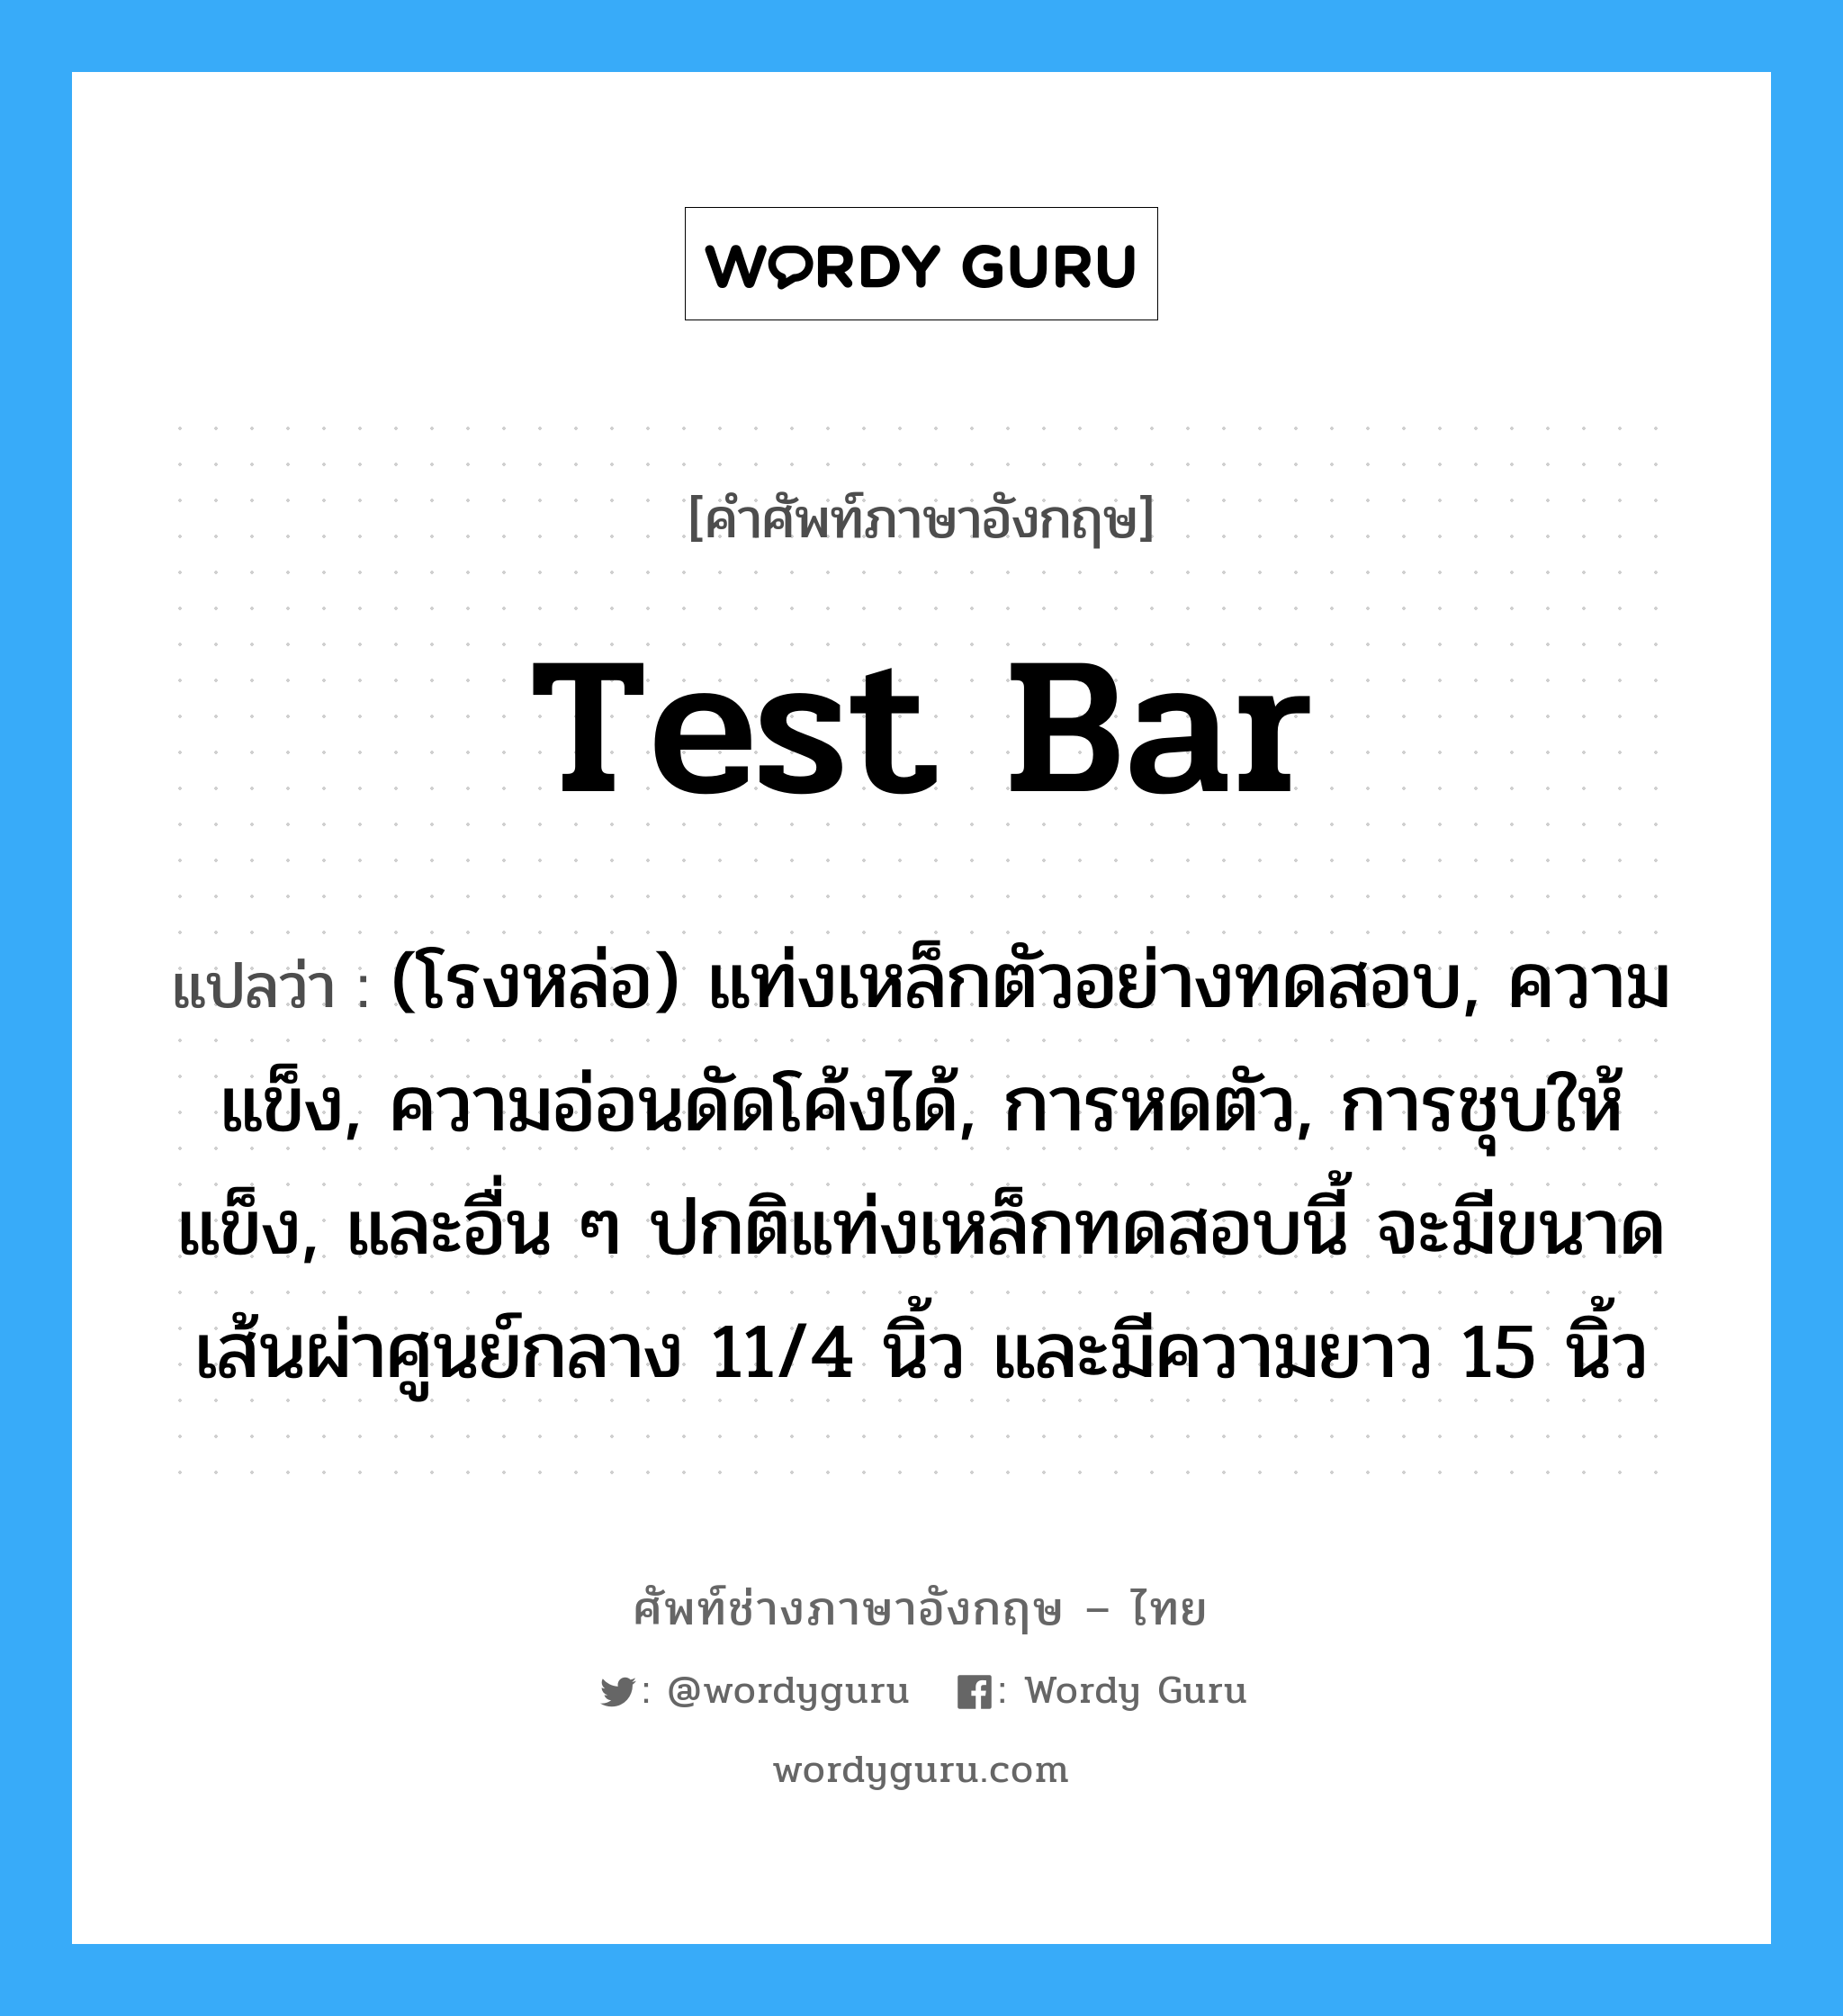 test bar แปลว่า?, คำศัพท์ช่างภาษาอังกฤษ - ไทย test bar คำศัพท์ภาษาอังกฤษ test bar แปลว่า (โรงหล่อ) แท่งเหล็กตัวอย่างทดสอบ, ความแข็ง, ความอ่อนดัดโค้งได้, การหดตัว, การชุบให้แข็ง, และอื่น ๆ ปกติแท่งเหล็กทดสอบนี้ จะมีขนาดเส้นผ่าศูนย์กลาง 11/4 นิ้ว และมีความยาว 15 นิ้ว